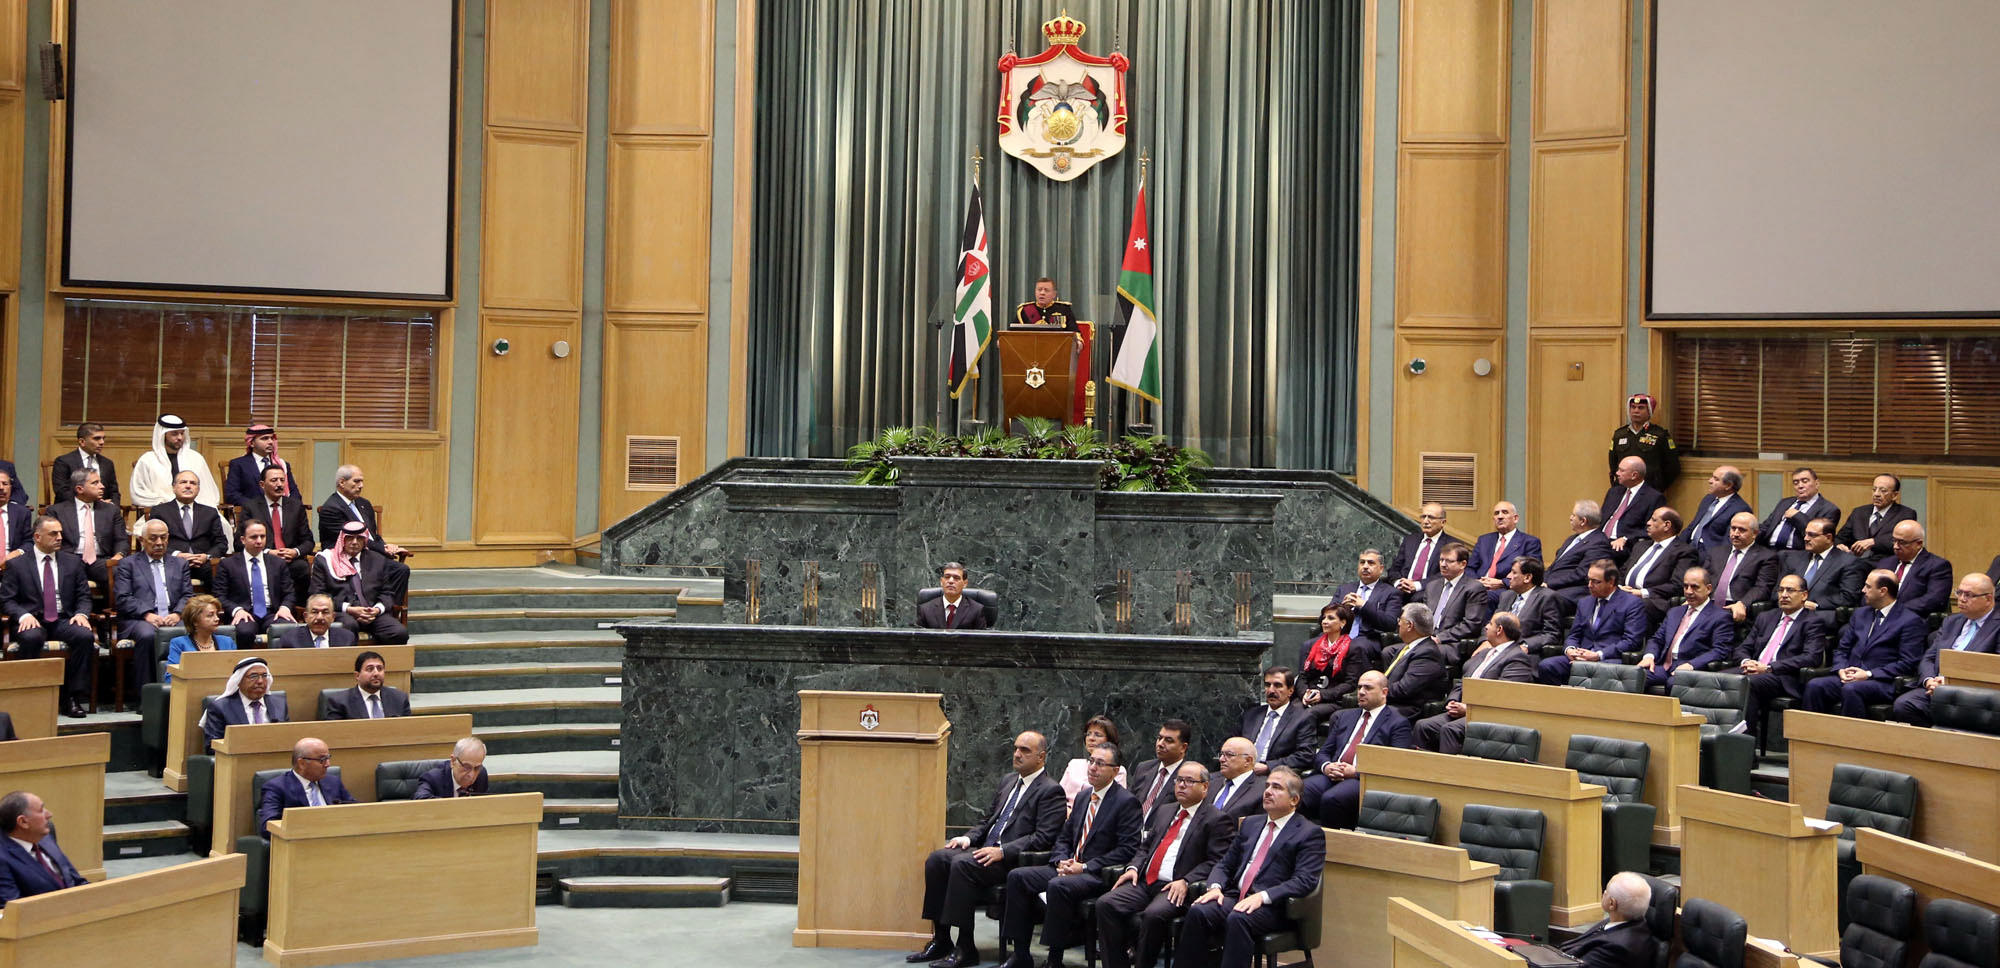 Jordánia két miniszterét is kirúgták, miután a járványügyi szabályokat megszegve buliztak egy nagyot